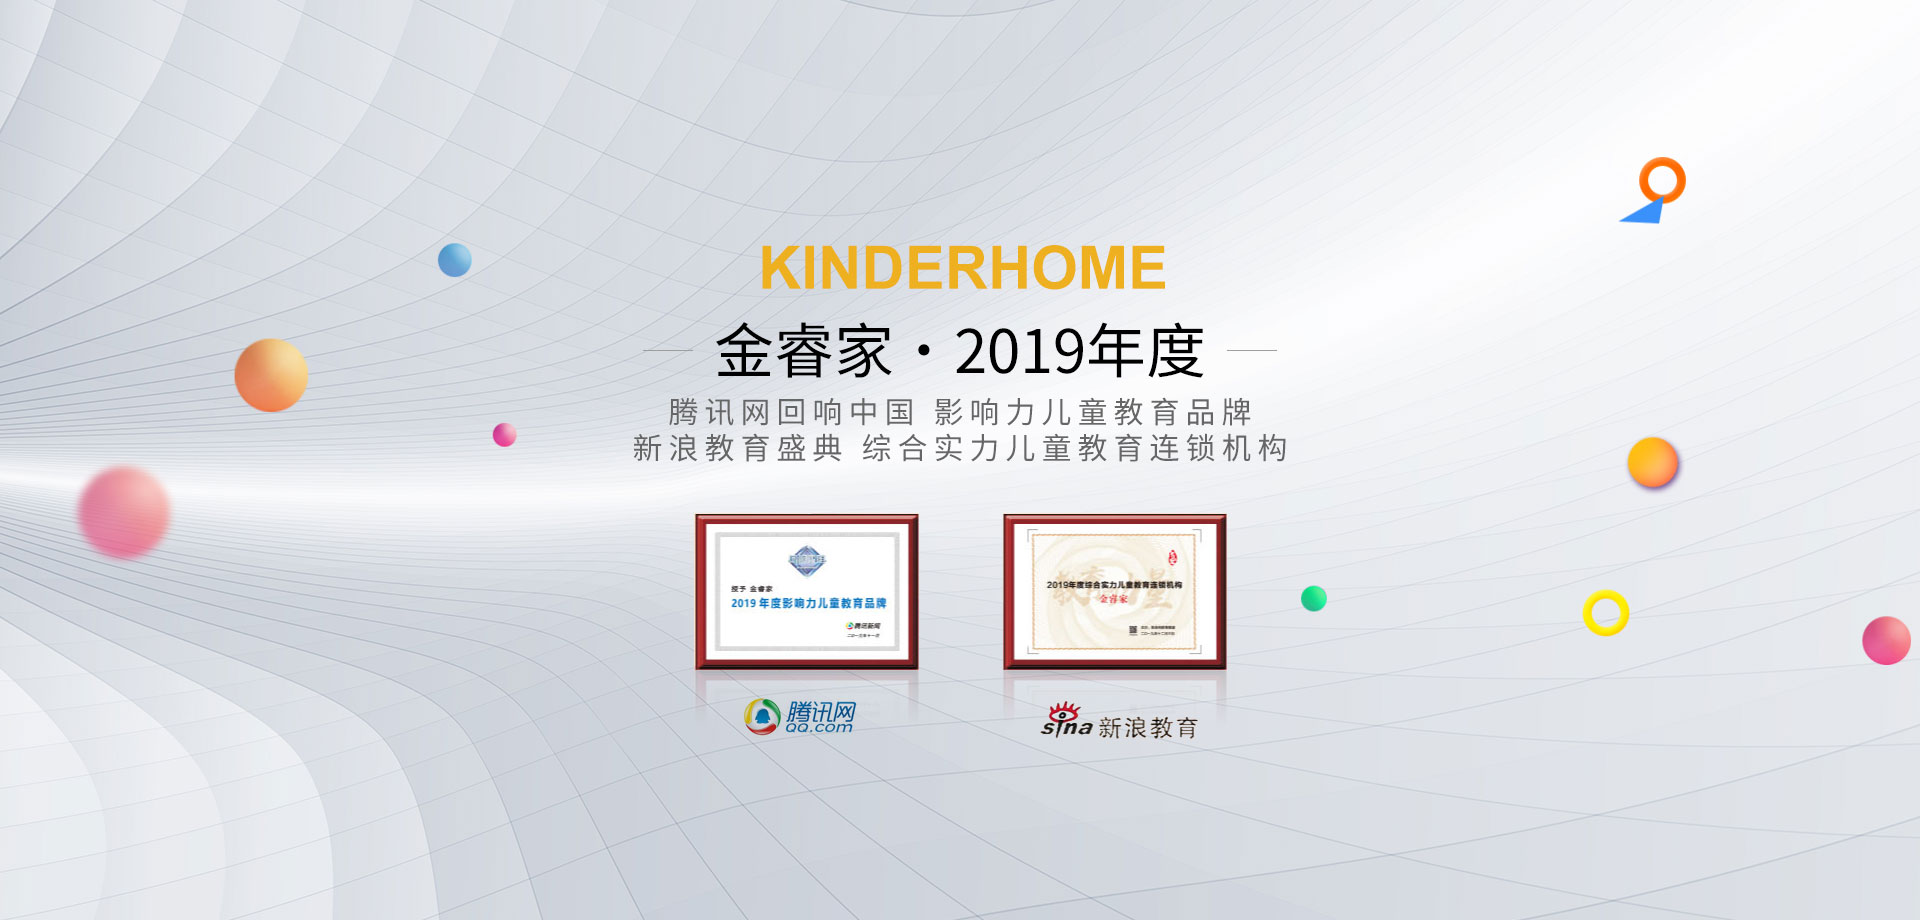 早教中心加盟荣获回响中国影响力儿童教育品牌